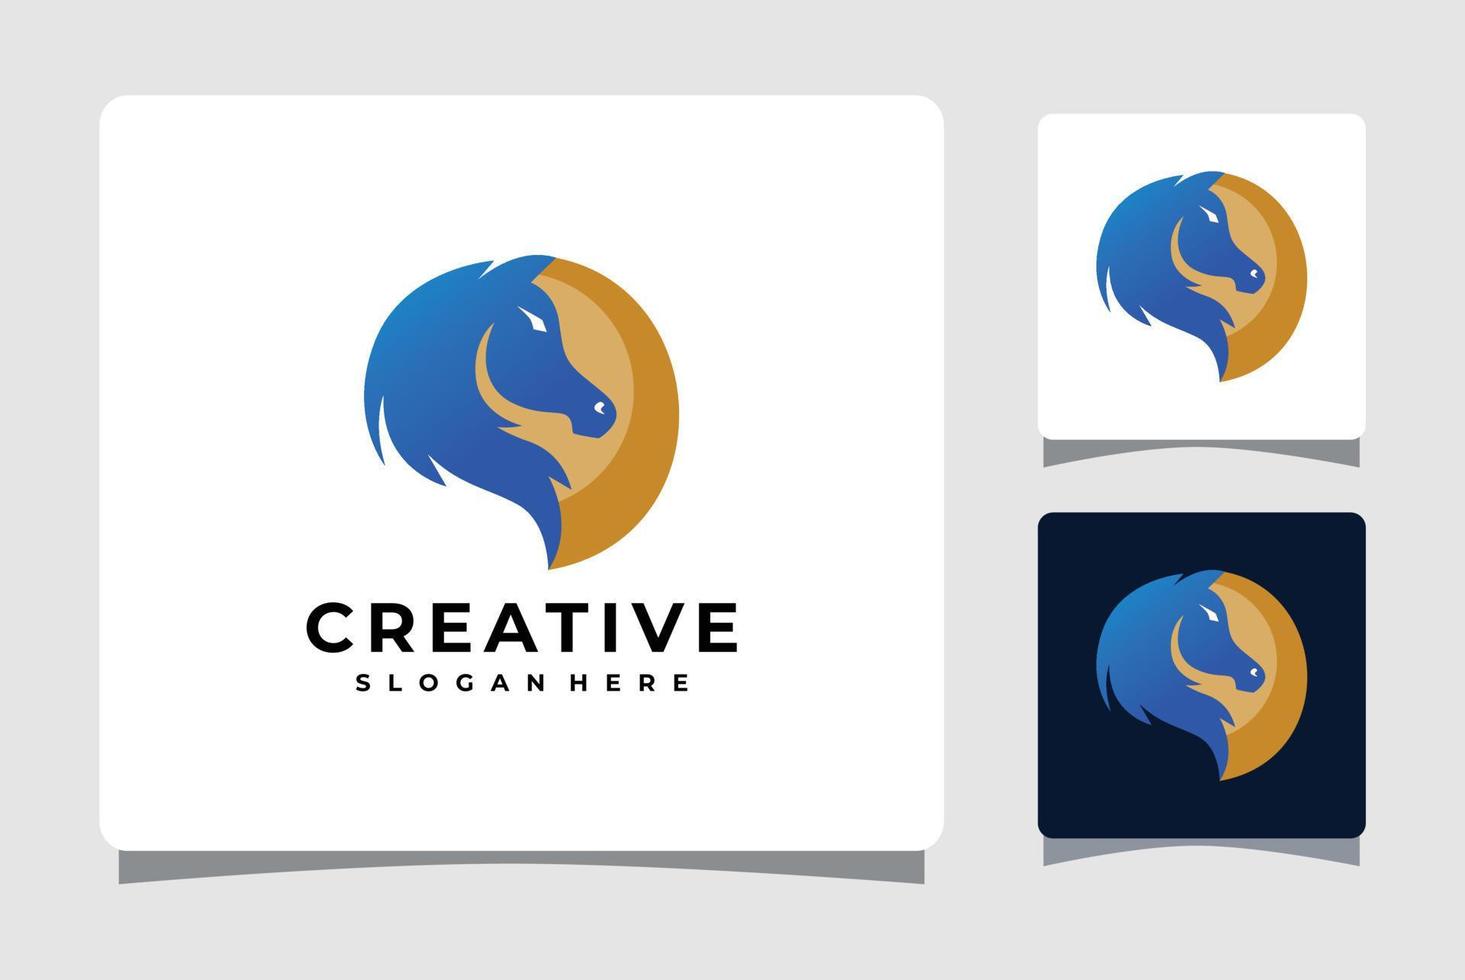 häst logotyp mall med visitkort design inspiration vektor